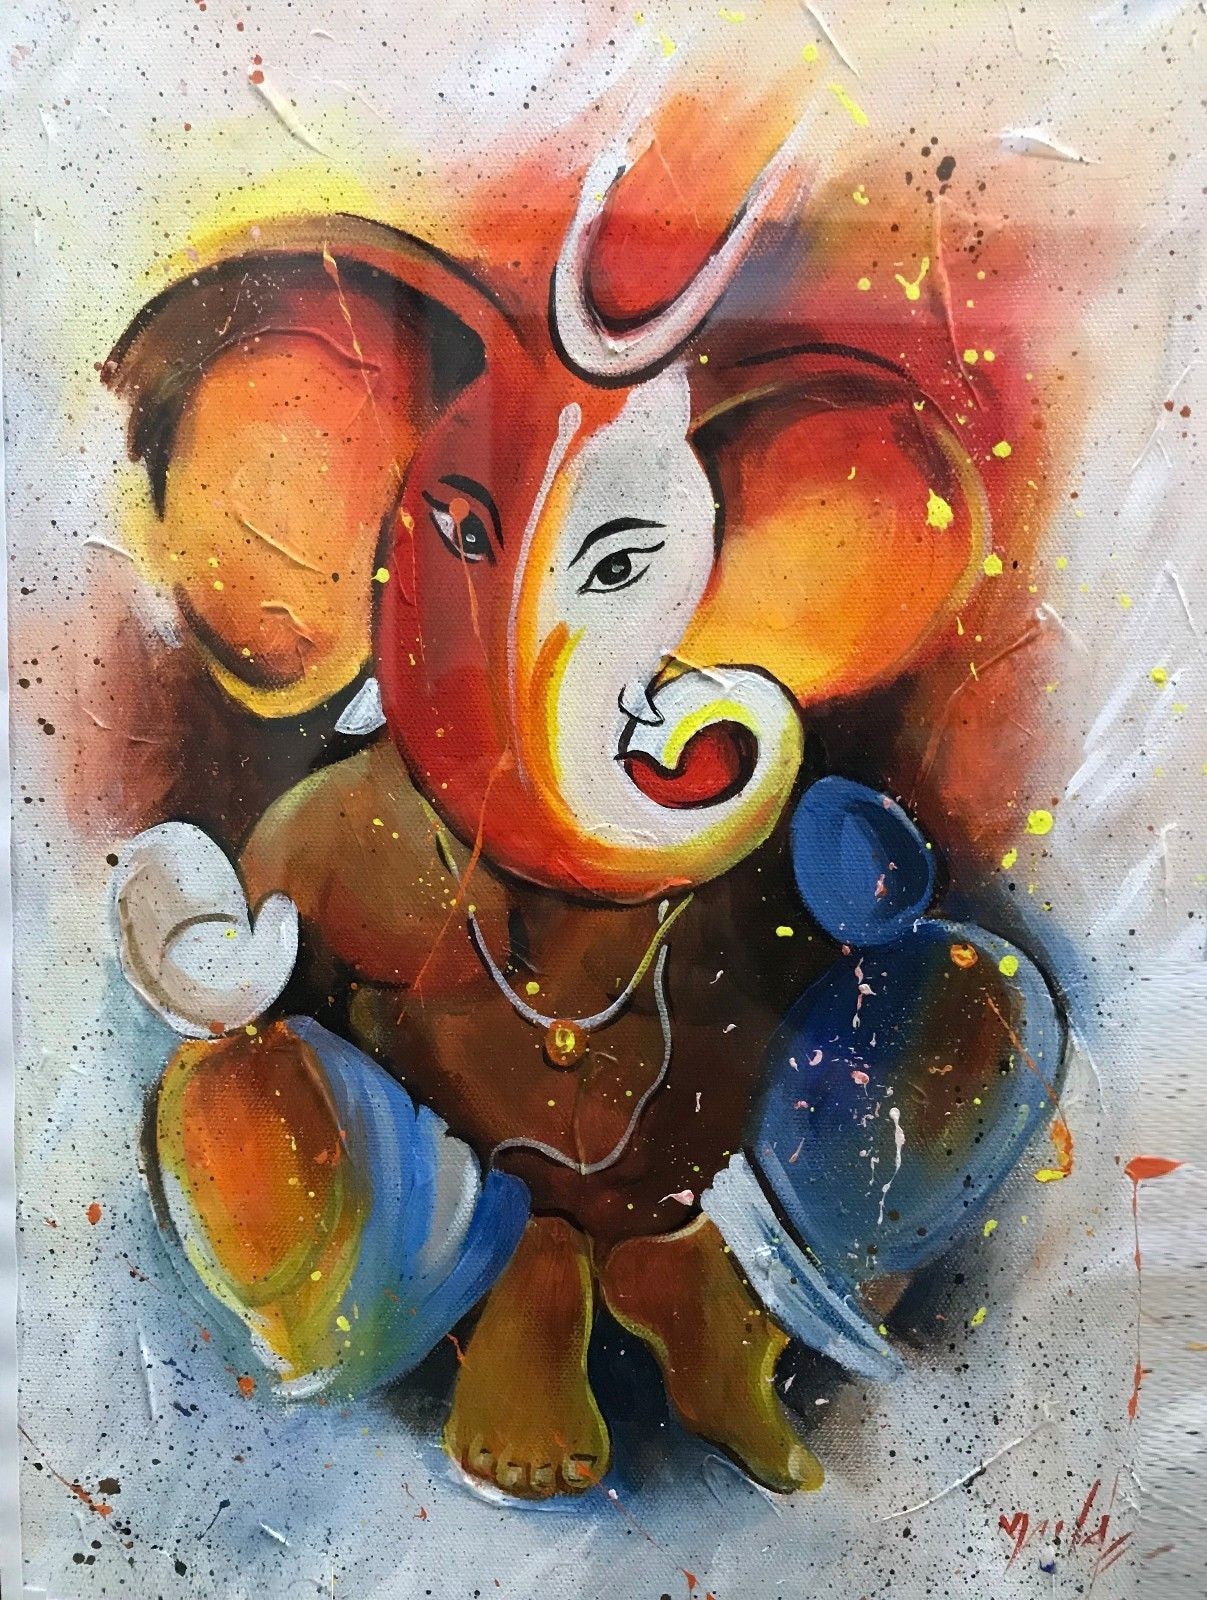 Hinduism Deity Ganesha Vinayak Painting Signed India Arts